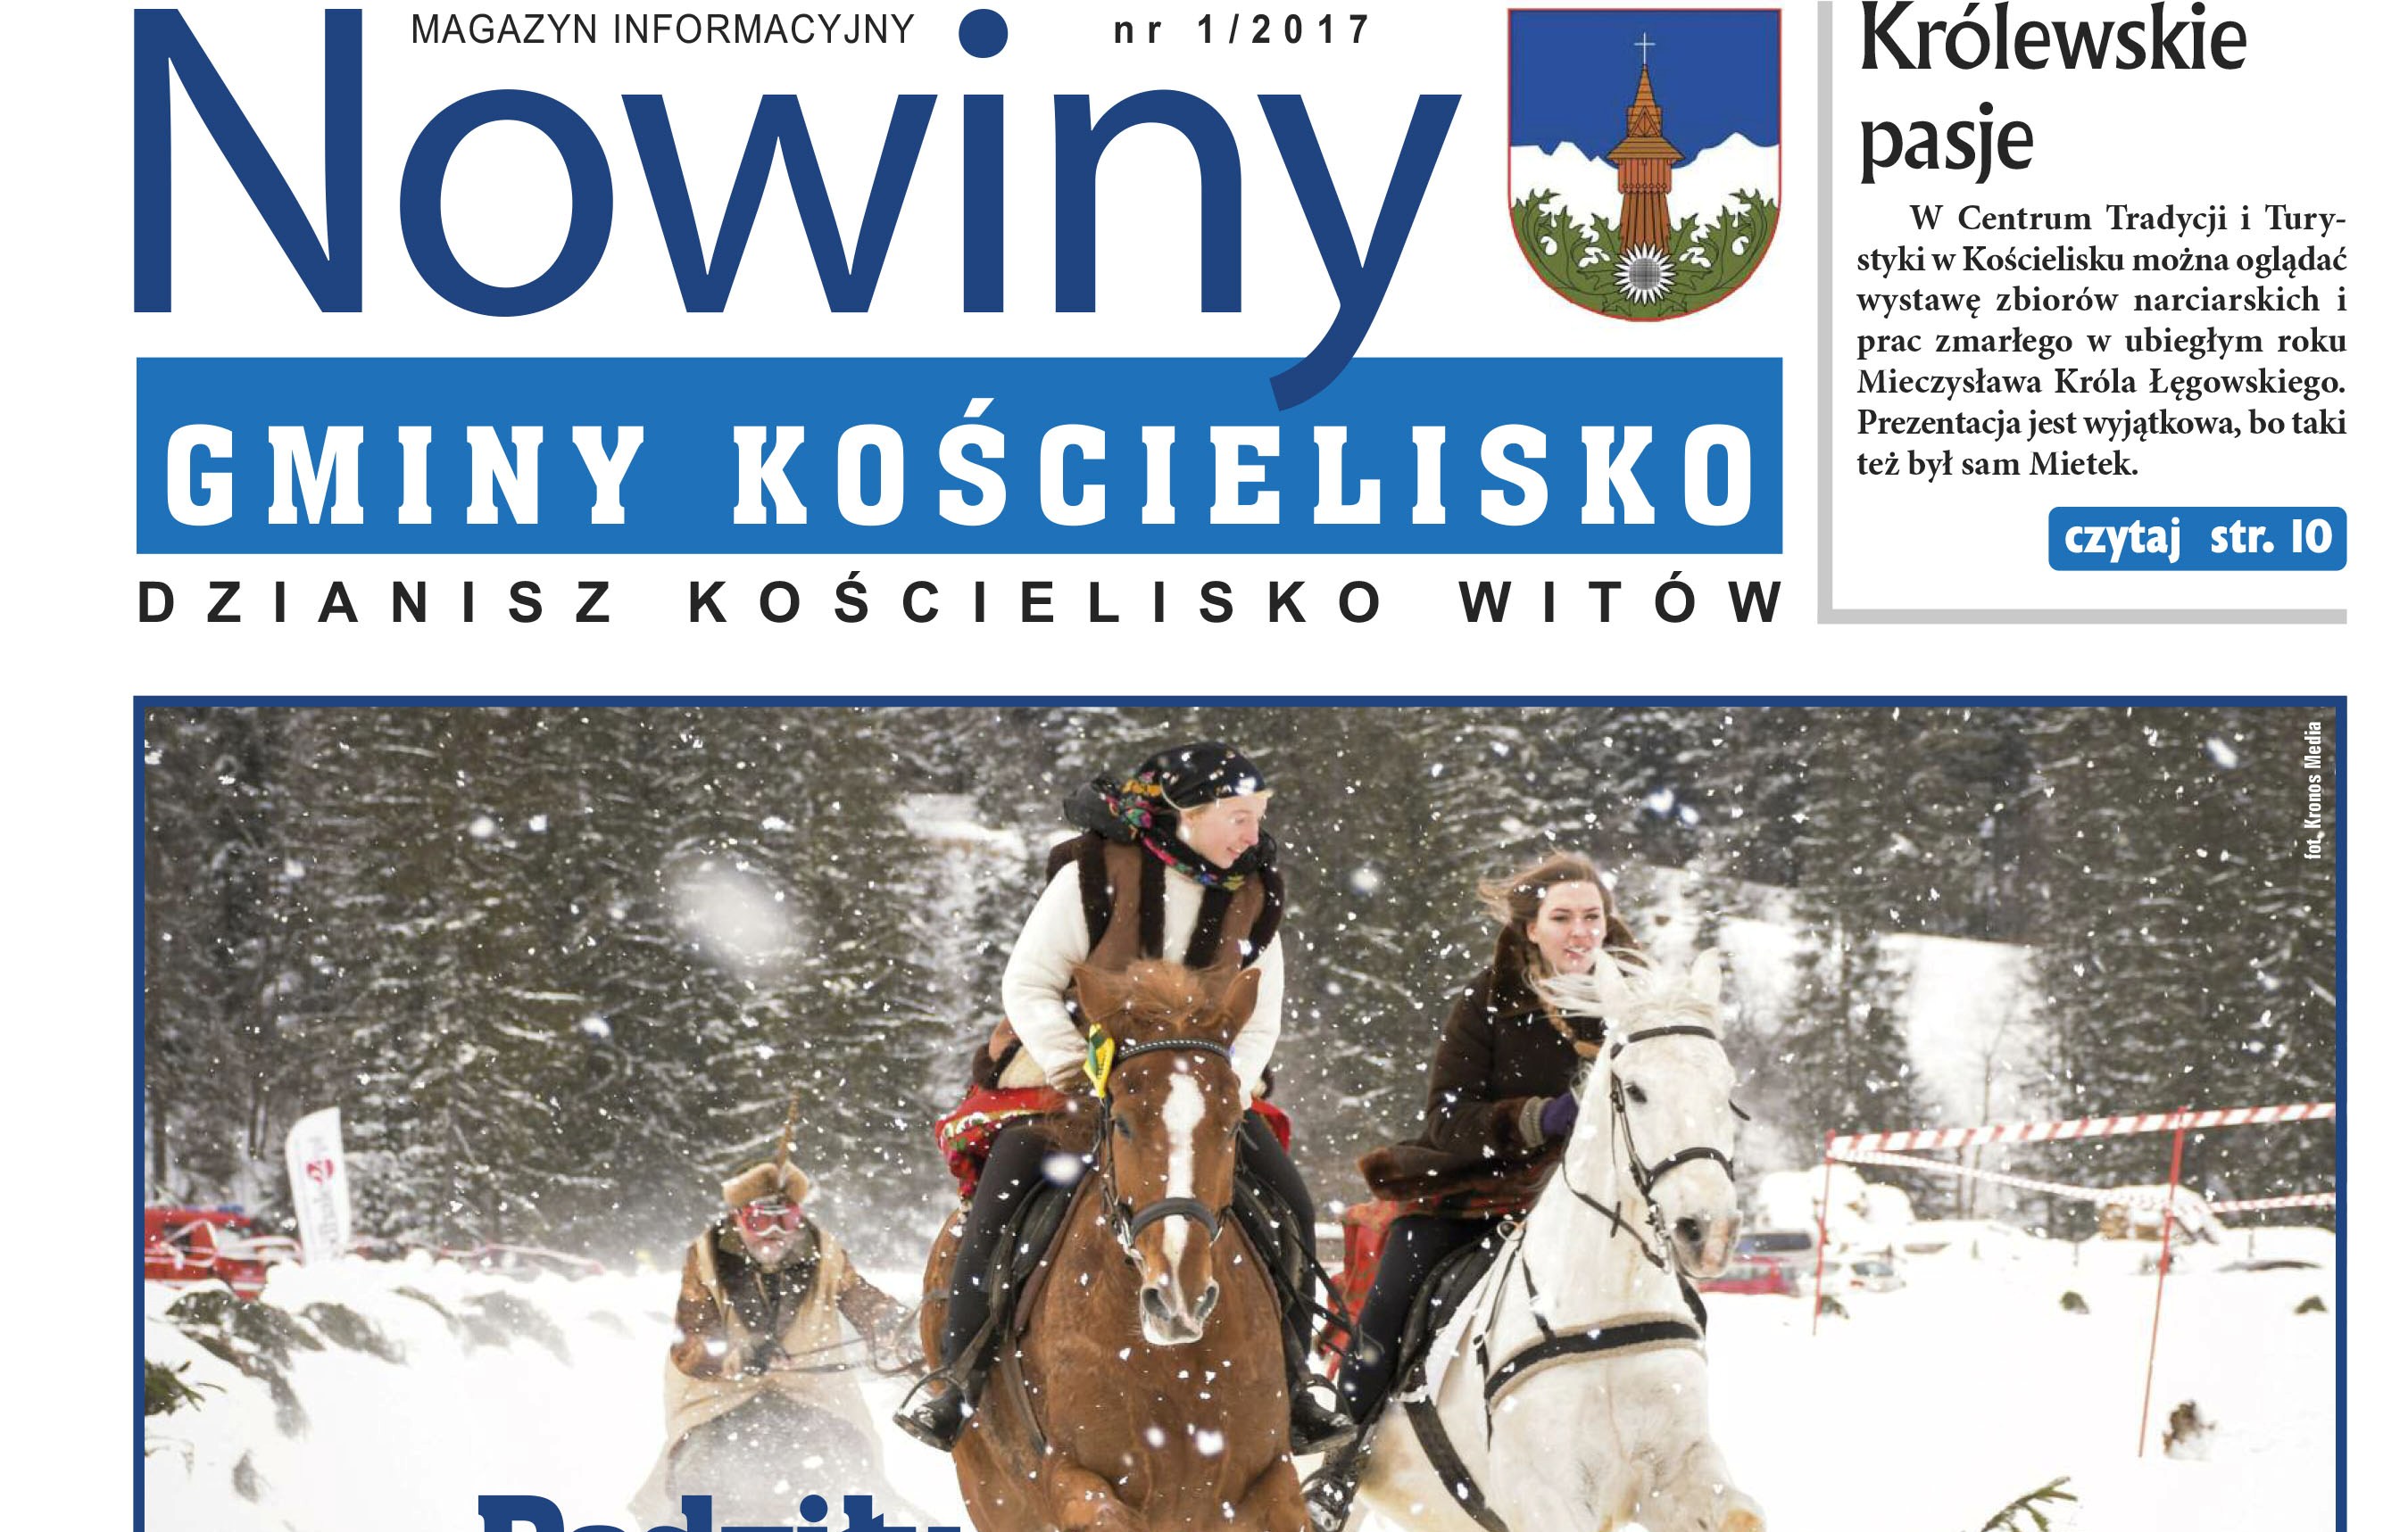 Zdjęcie przedstawia fragment pierwszej strony gazety gminnej Nowiny Gminy Kościelisko